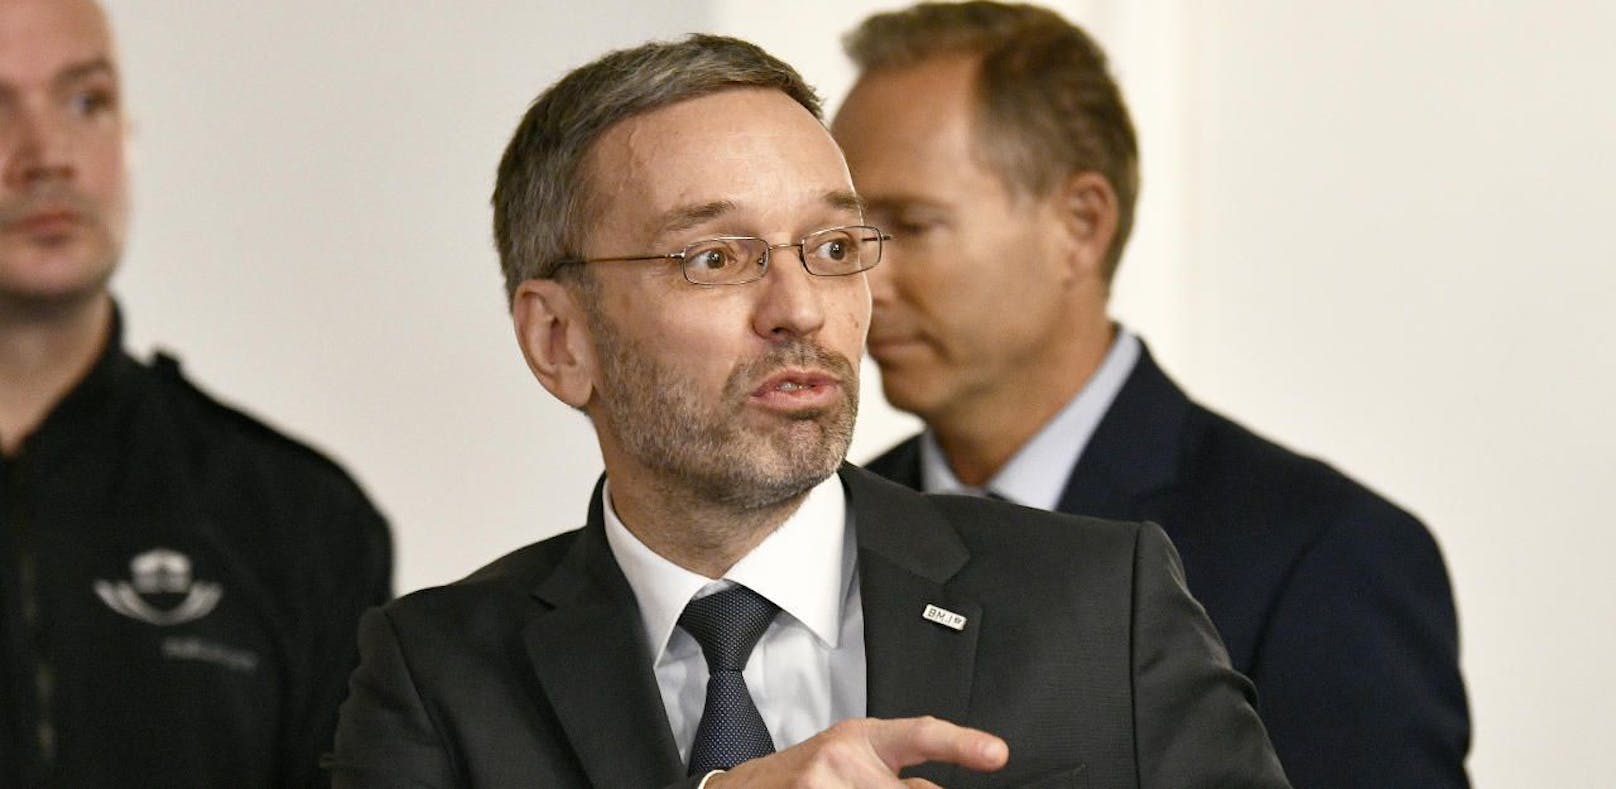 Innenminister Herbert Kickl (FPÖ) beim BVT-U-Ausschuss.